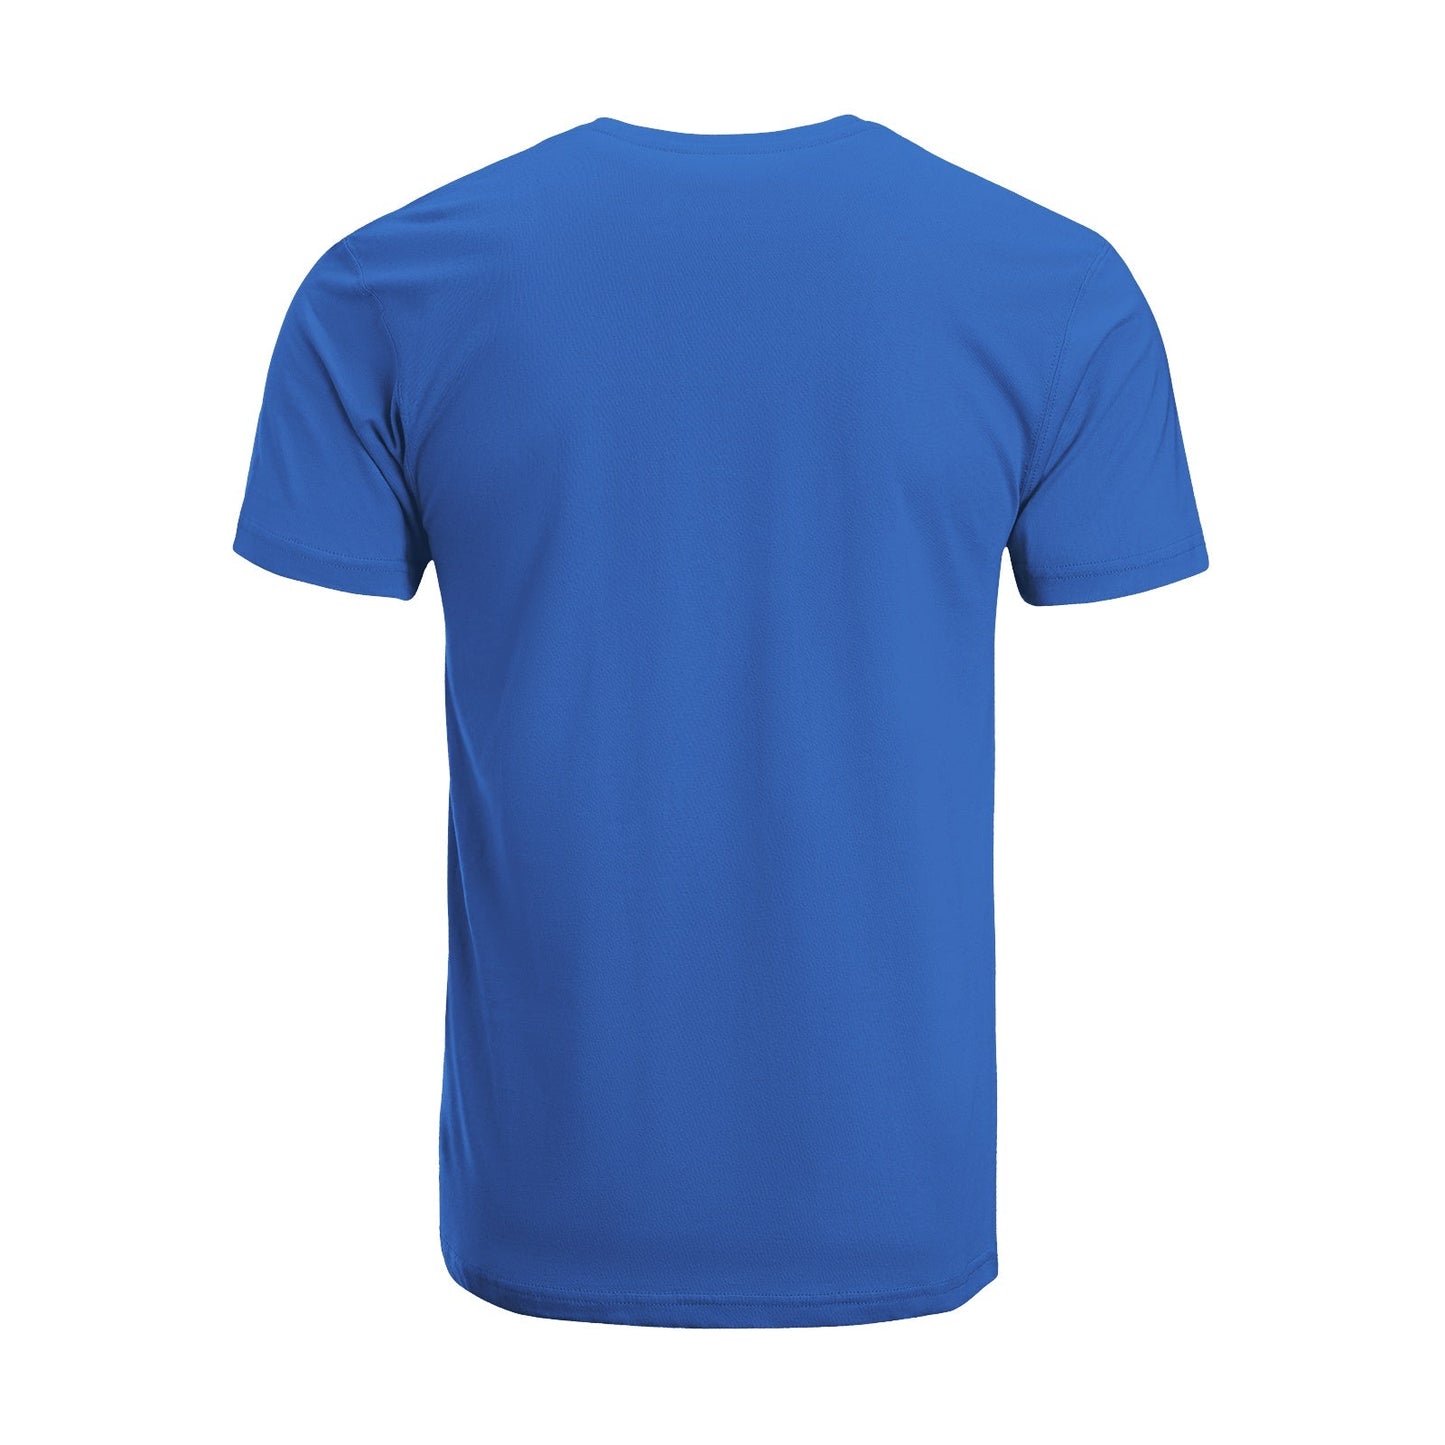 Unisex Short Sleeve Crew Neck Cotton Jersey T-Shirt TRUCK 10